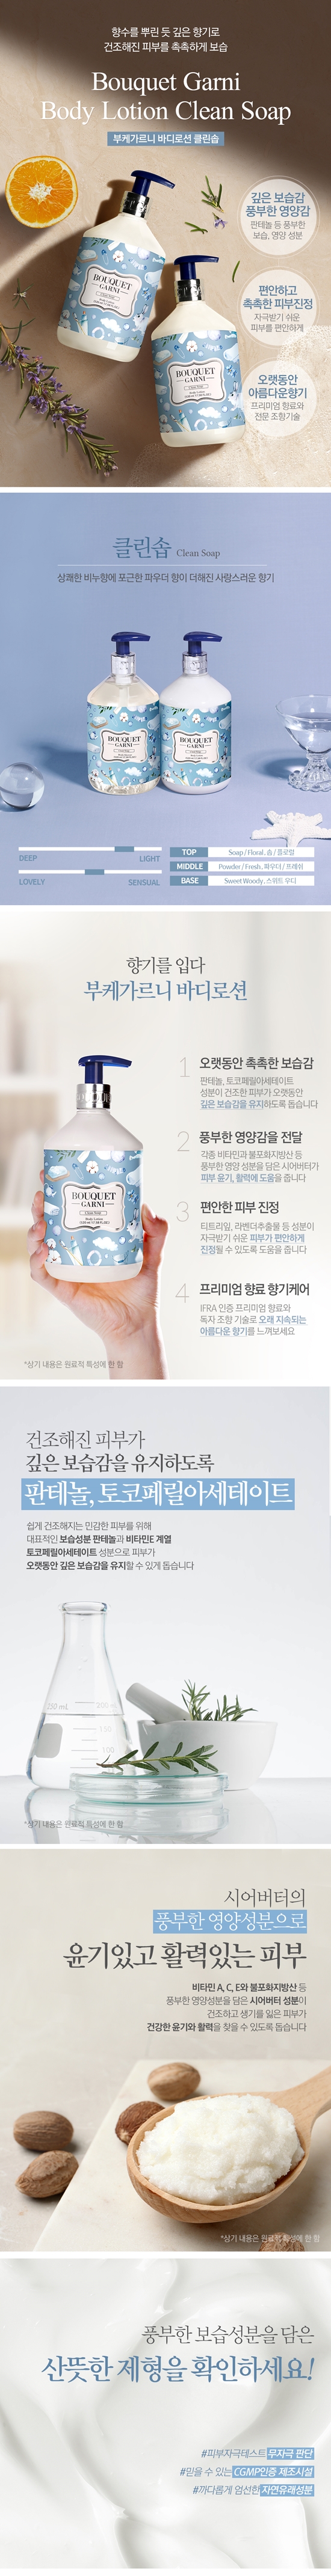 bouquet-garni-body-lotion-clean-soap-info1.jpg